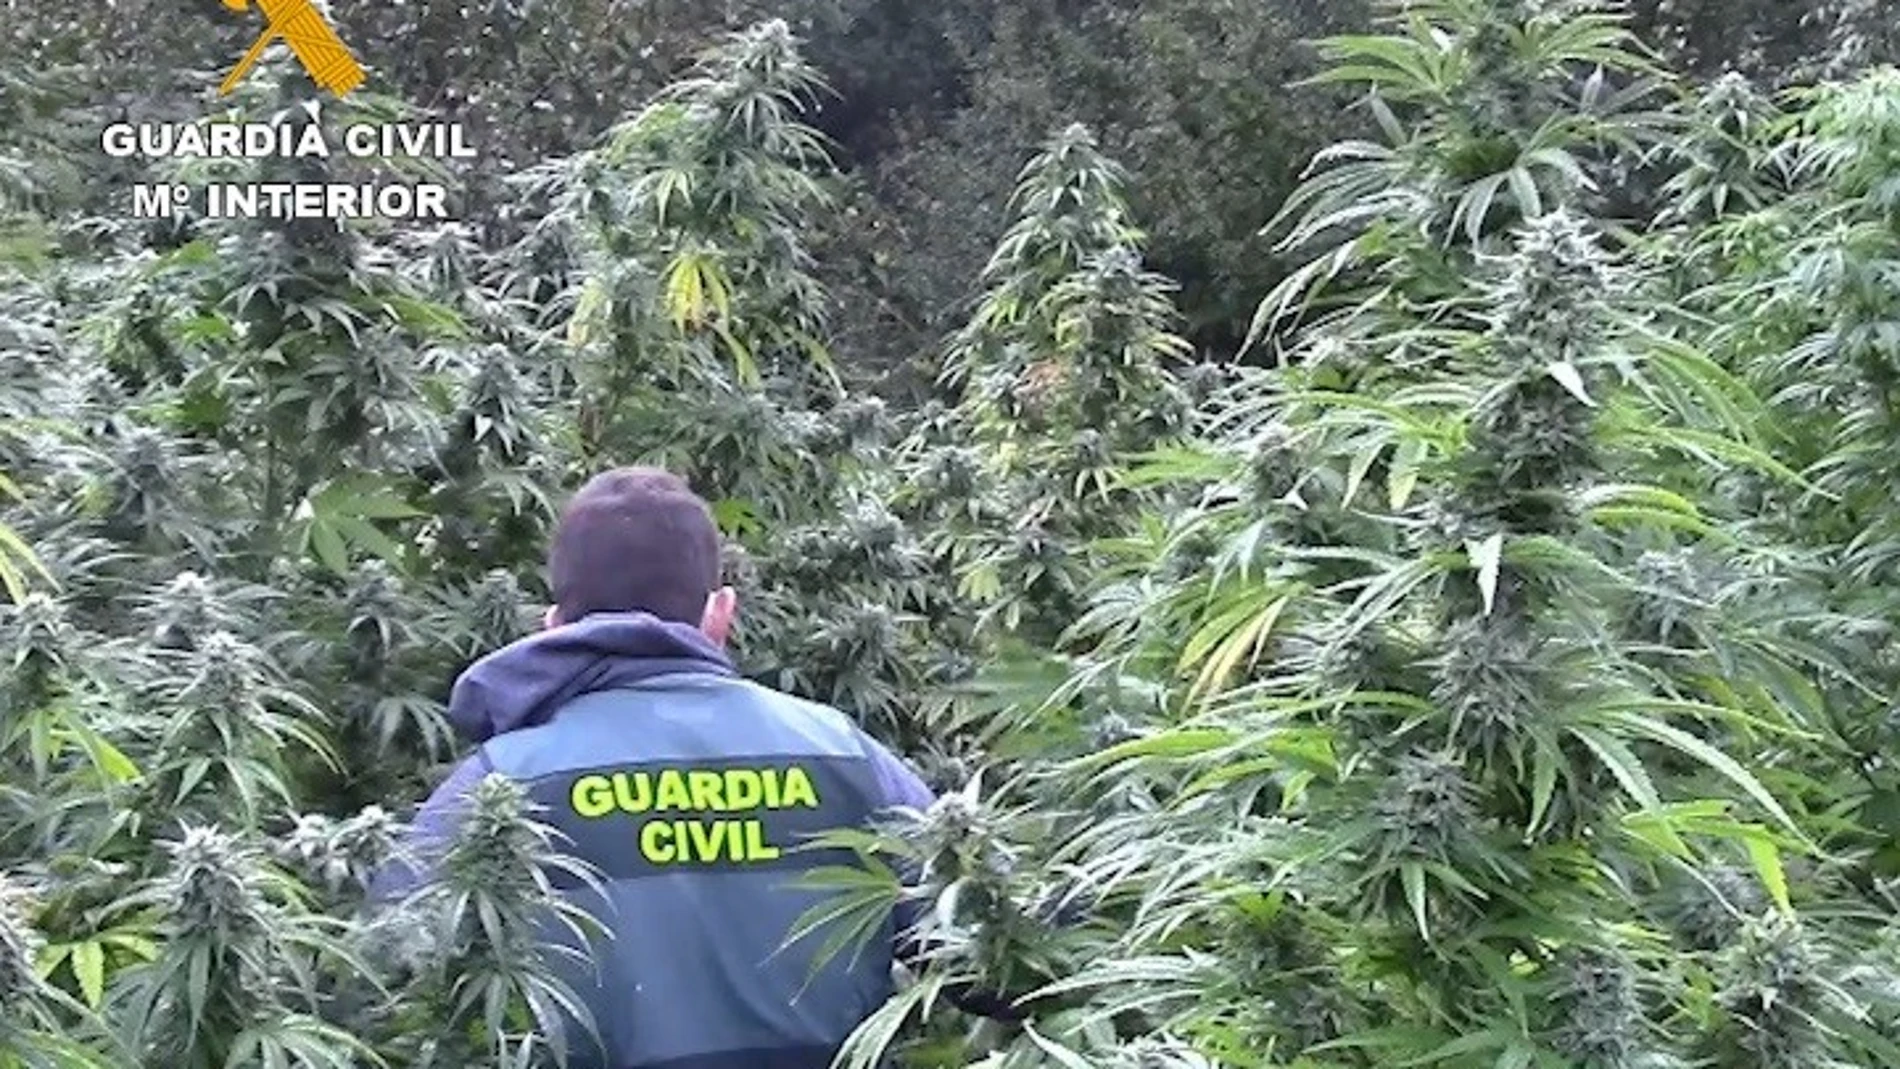 Plantación de marihuana descubierta en una paraje recóndito de la comarca de Montes de Oca, en la provincia de Burgos.GUARDIA CIVIL DE BURGOS.25/09/2020